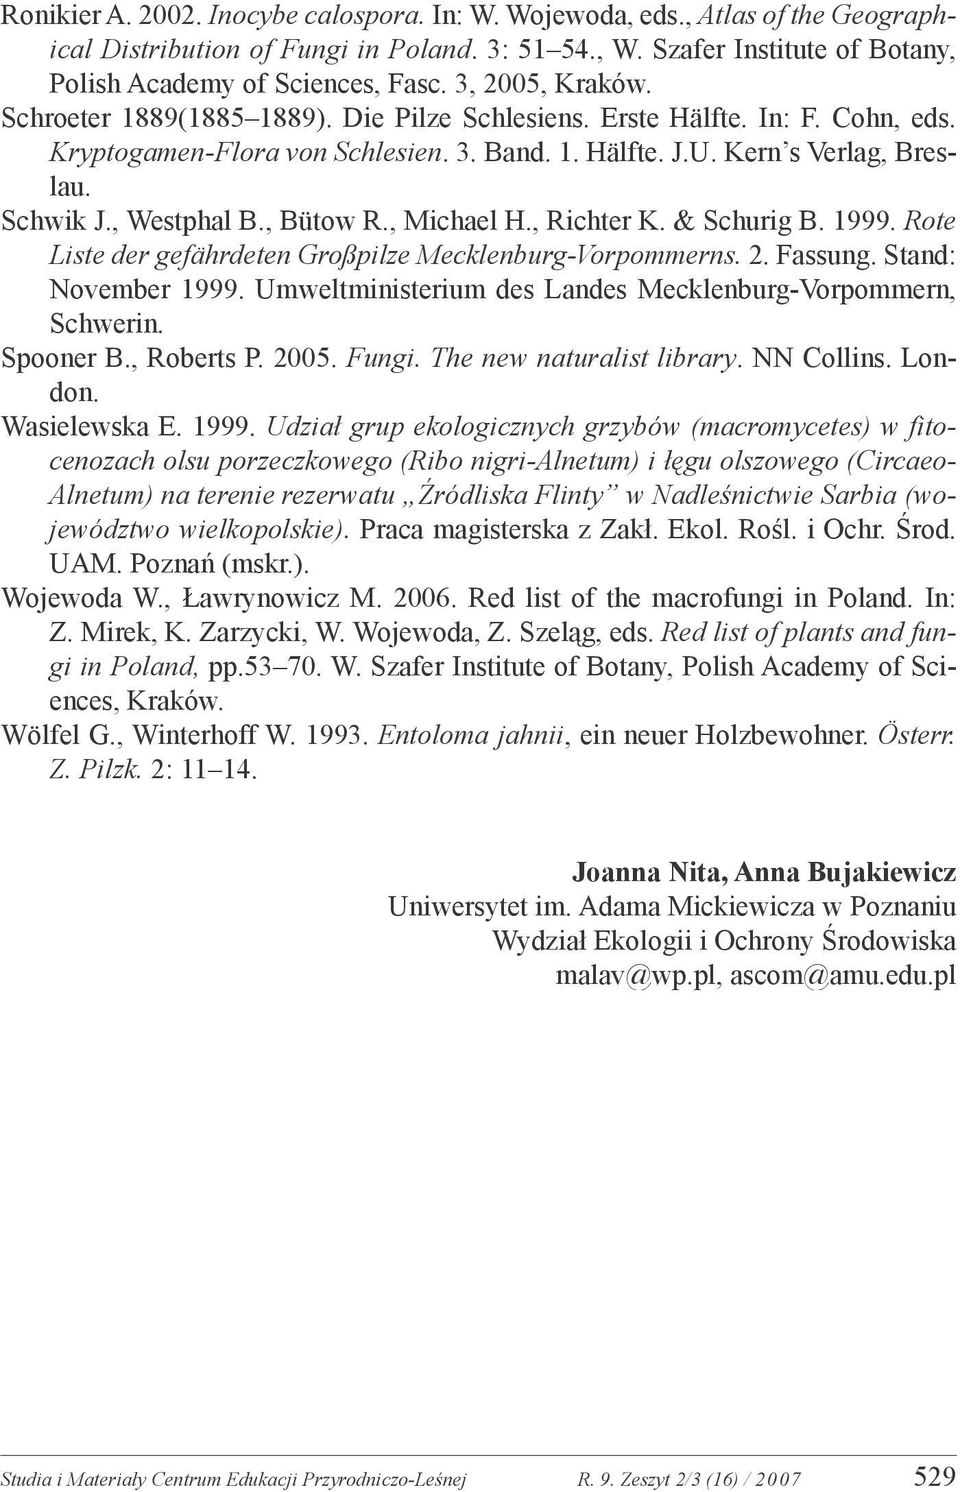 , Westphal B., Bütow R., Michael H., Richter K. & Schurig B. 1999. Rote Liste der gefährdeten Großpilze Mecklenburg-Vorpommerns. 2. Fassung. Stand: November 1999.